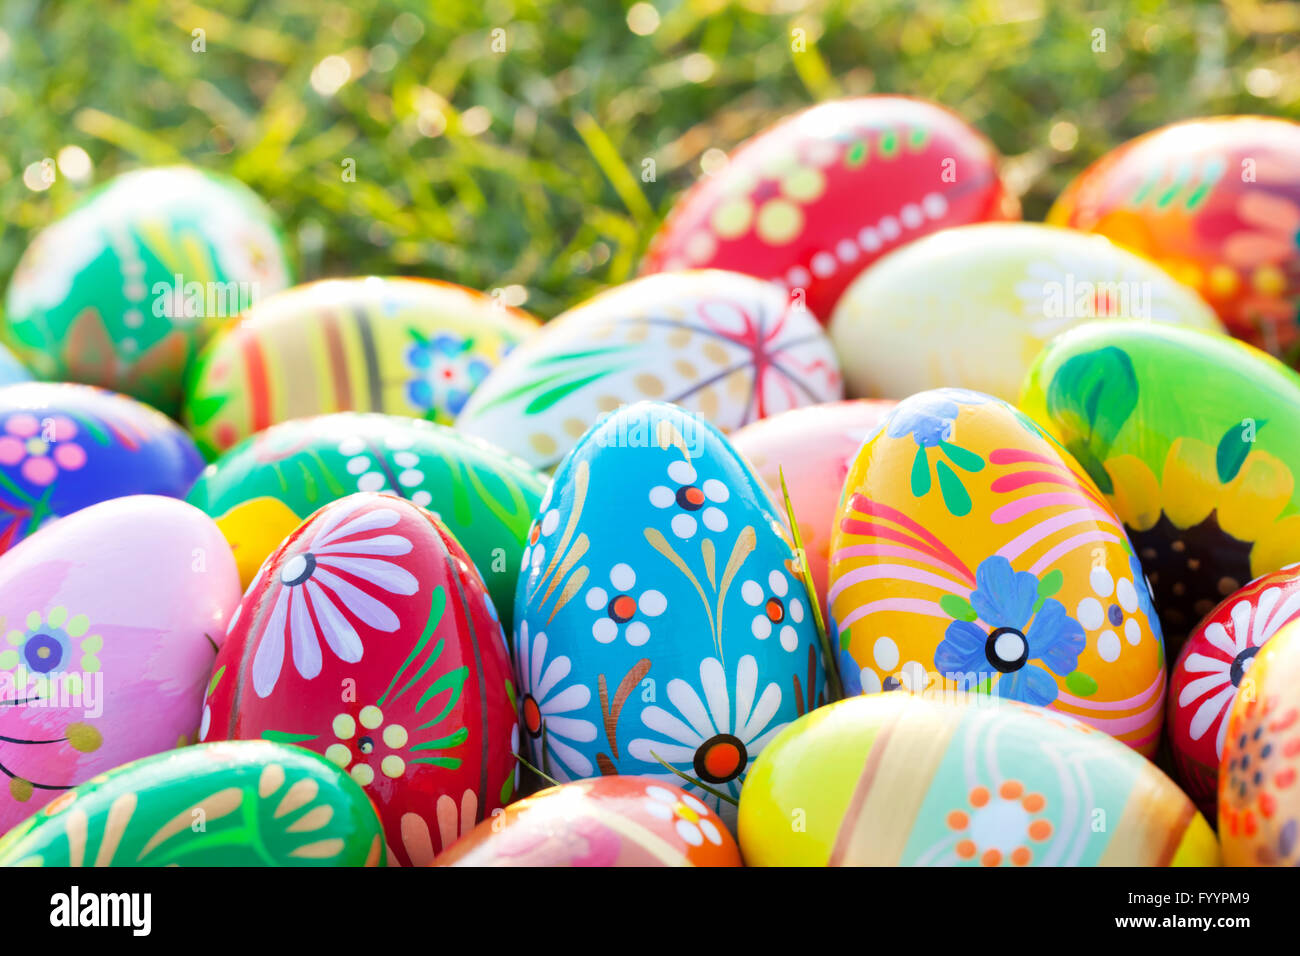 Los huevos de Pascua pintados a mano sobre el césped. Floral Foto de stock